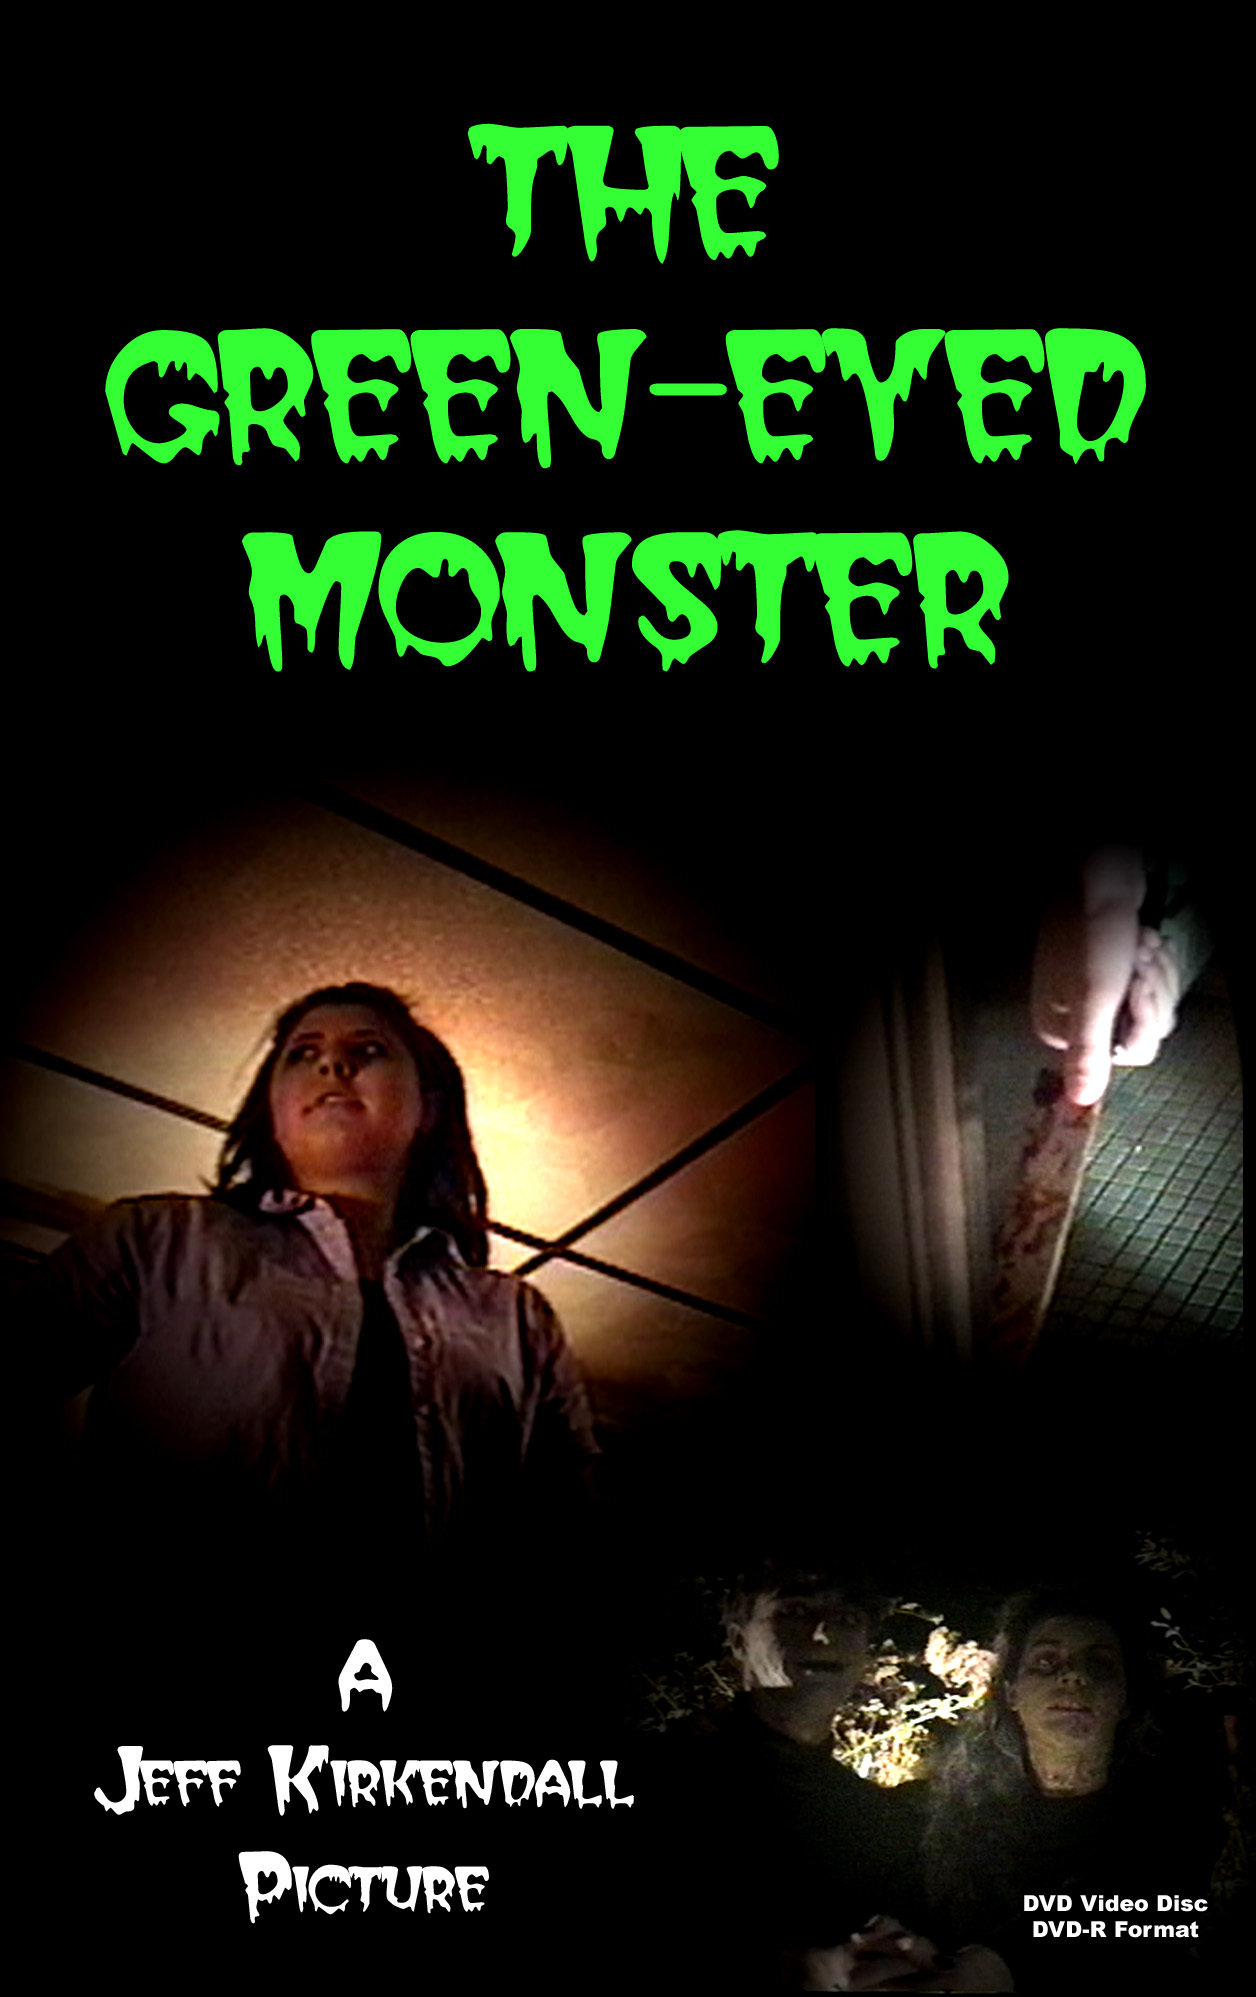 The Green-Eyed Monster (1999) Screenshot 1 